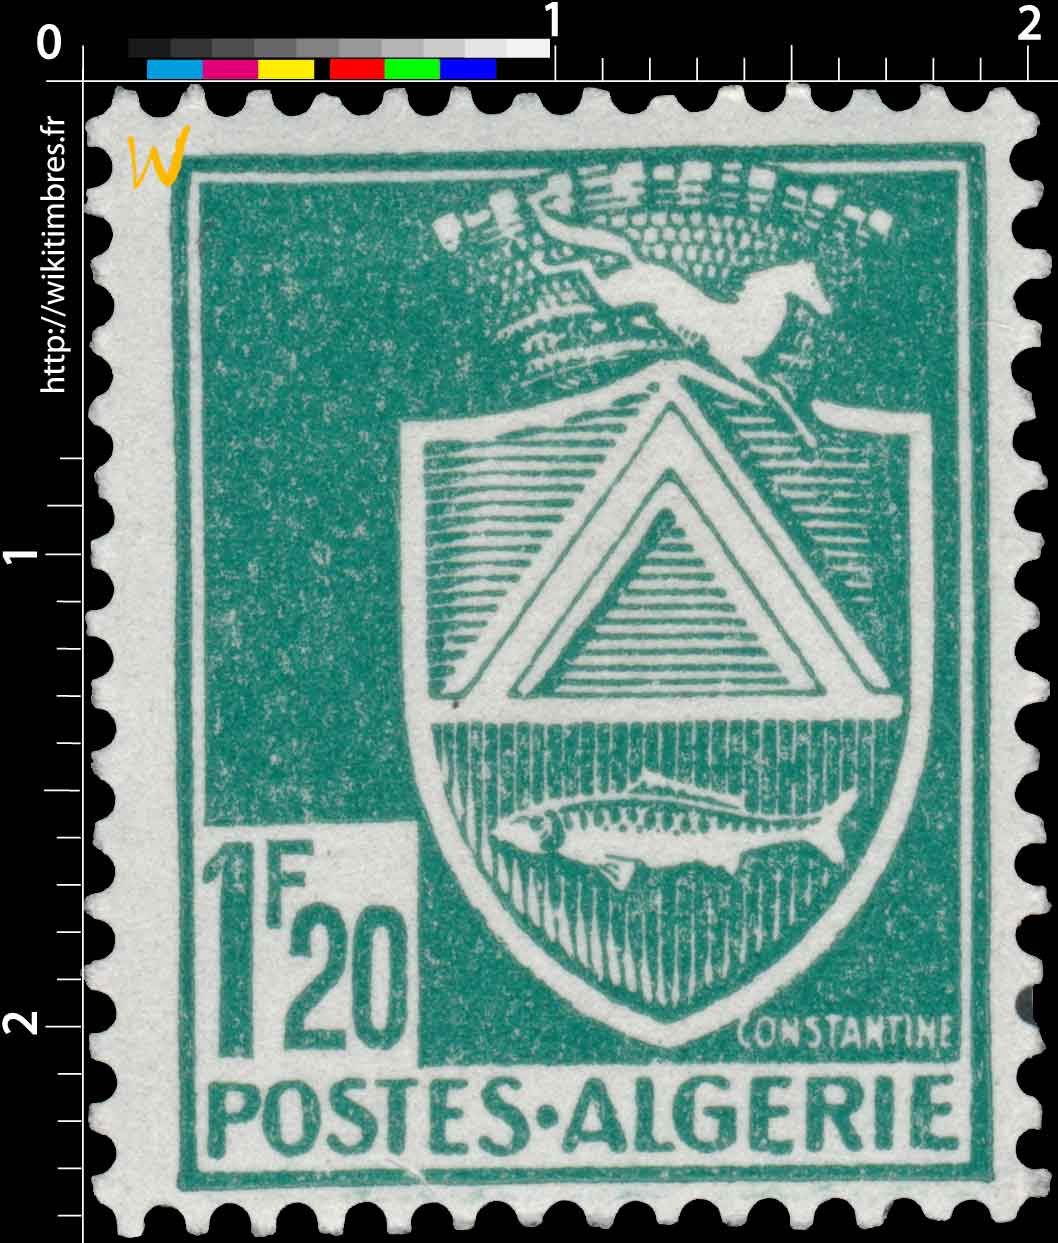 Algérie - Constantine   